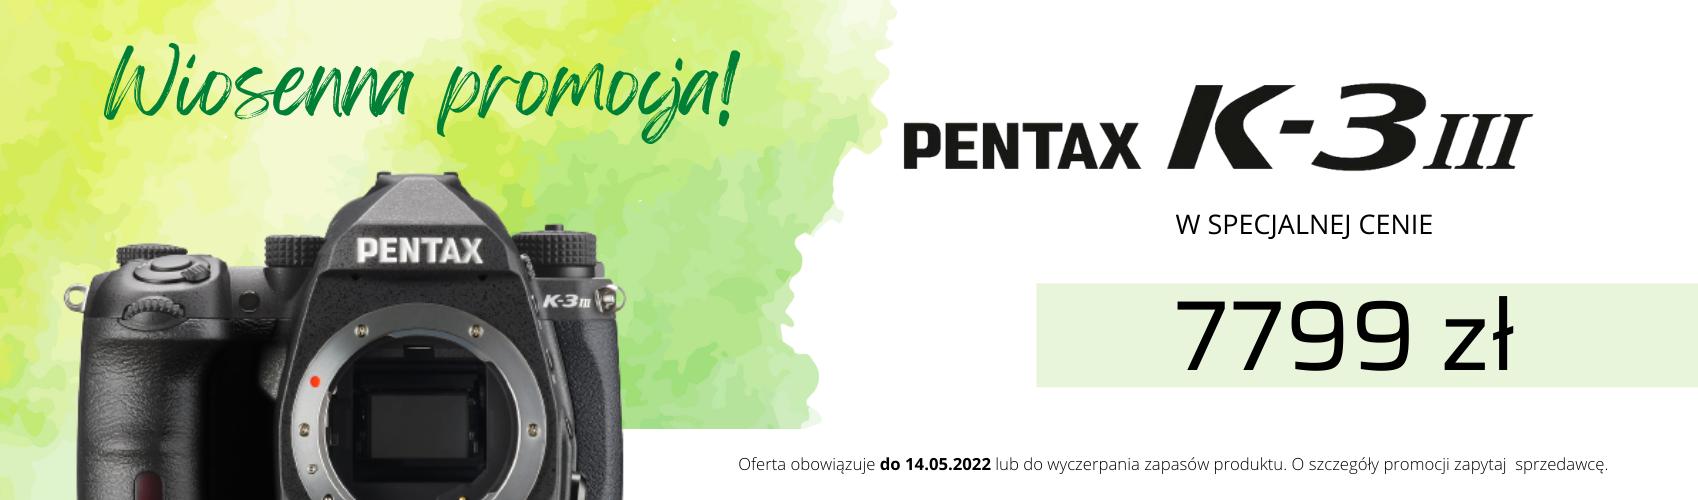 Teraz Pentax K-3III w specjalnej cenie 7799 zł